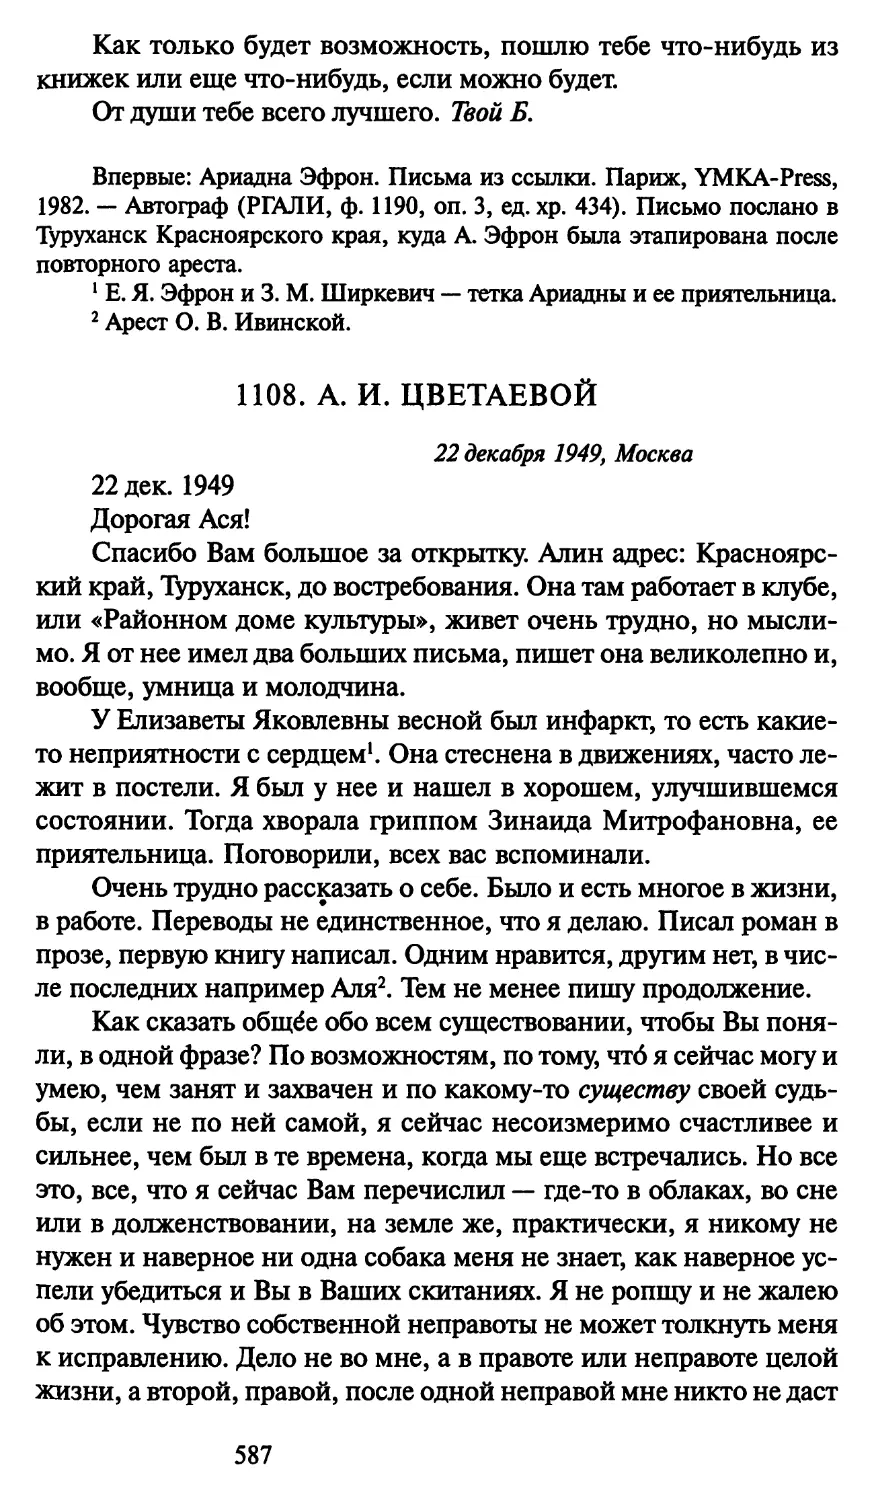 1108. А. И. Цветаевой 22 декабря 1949